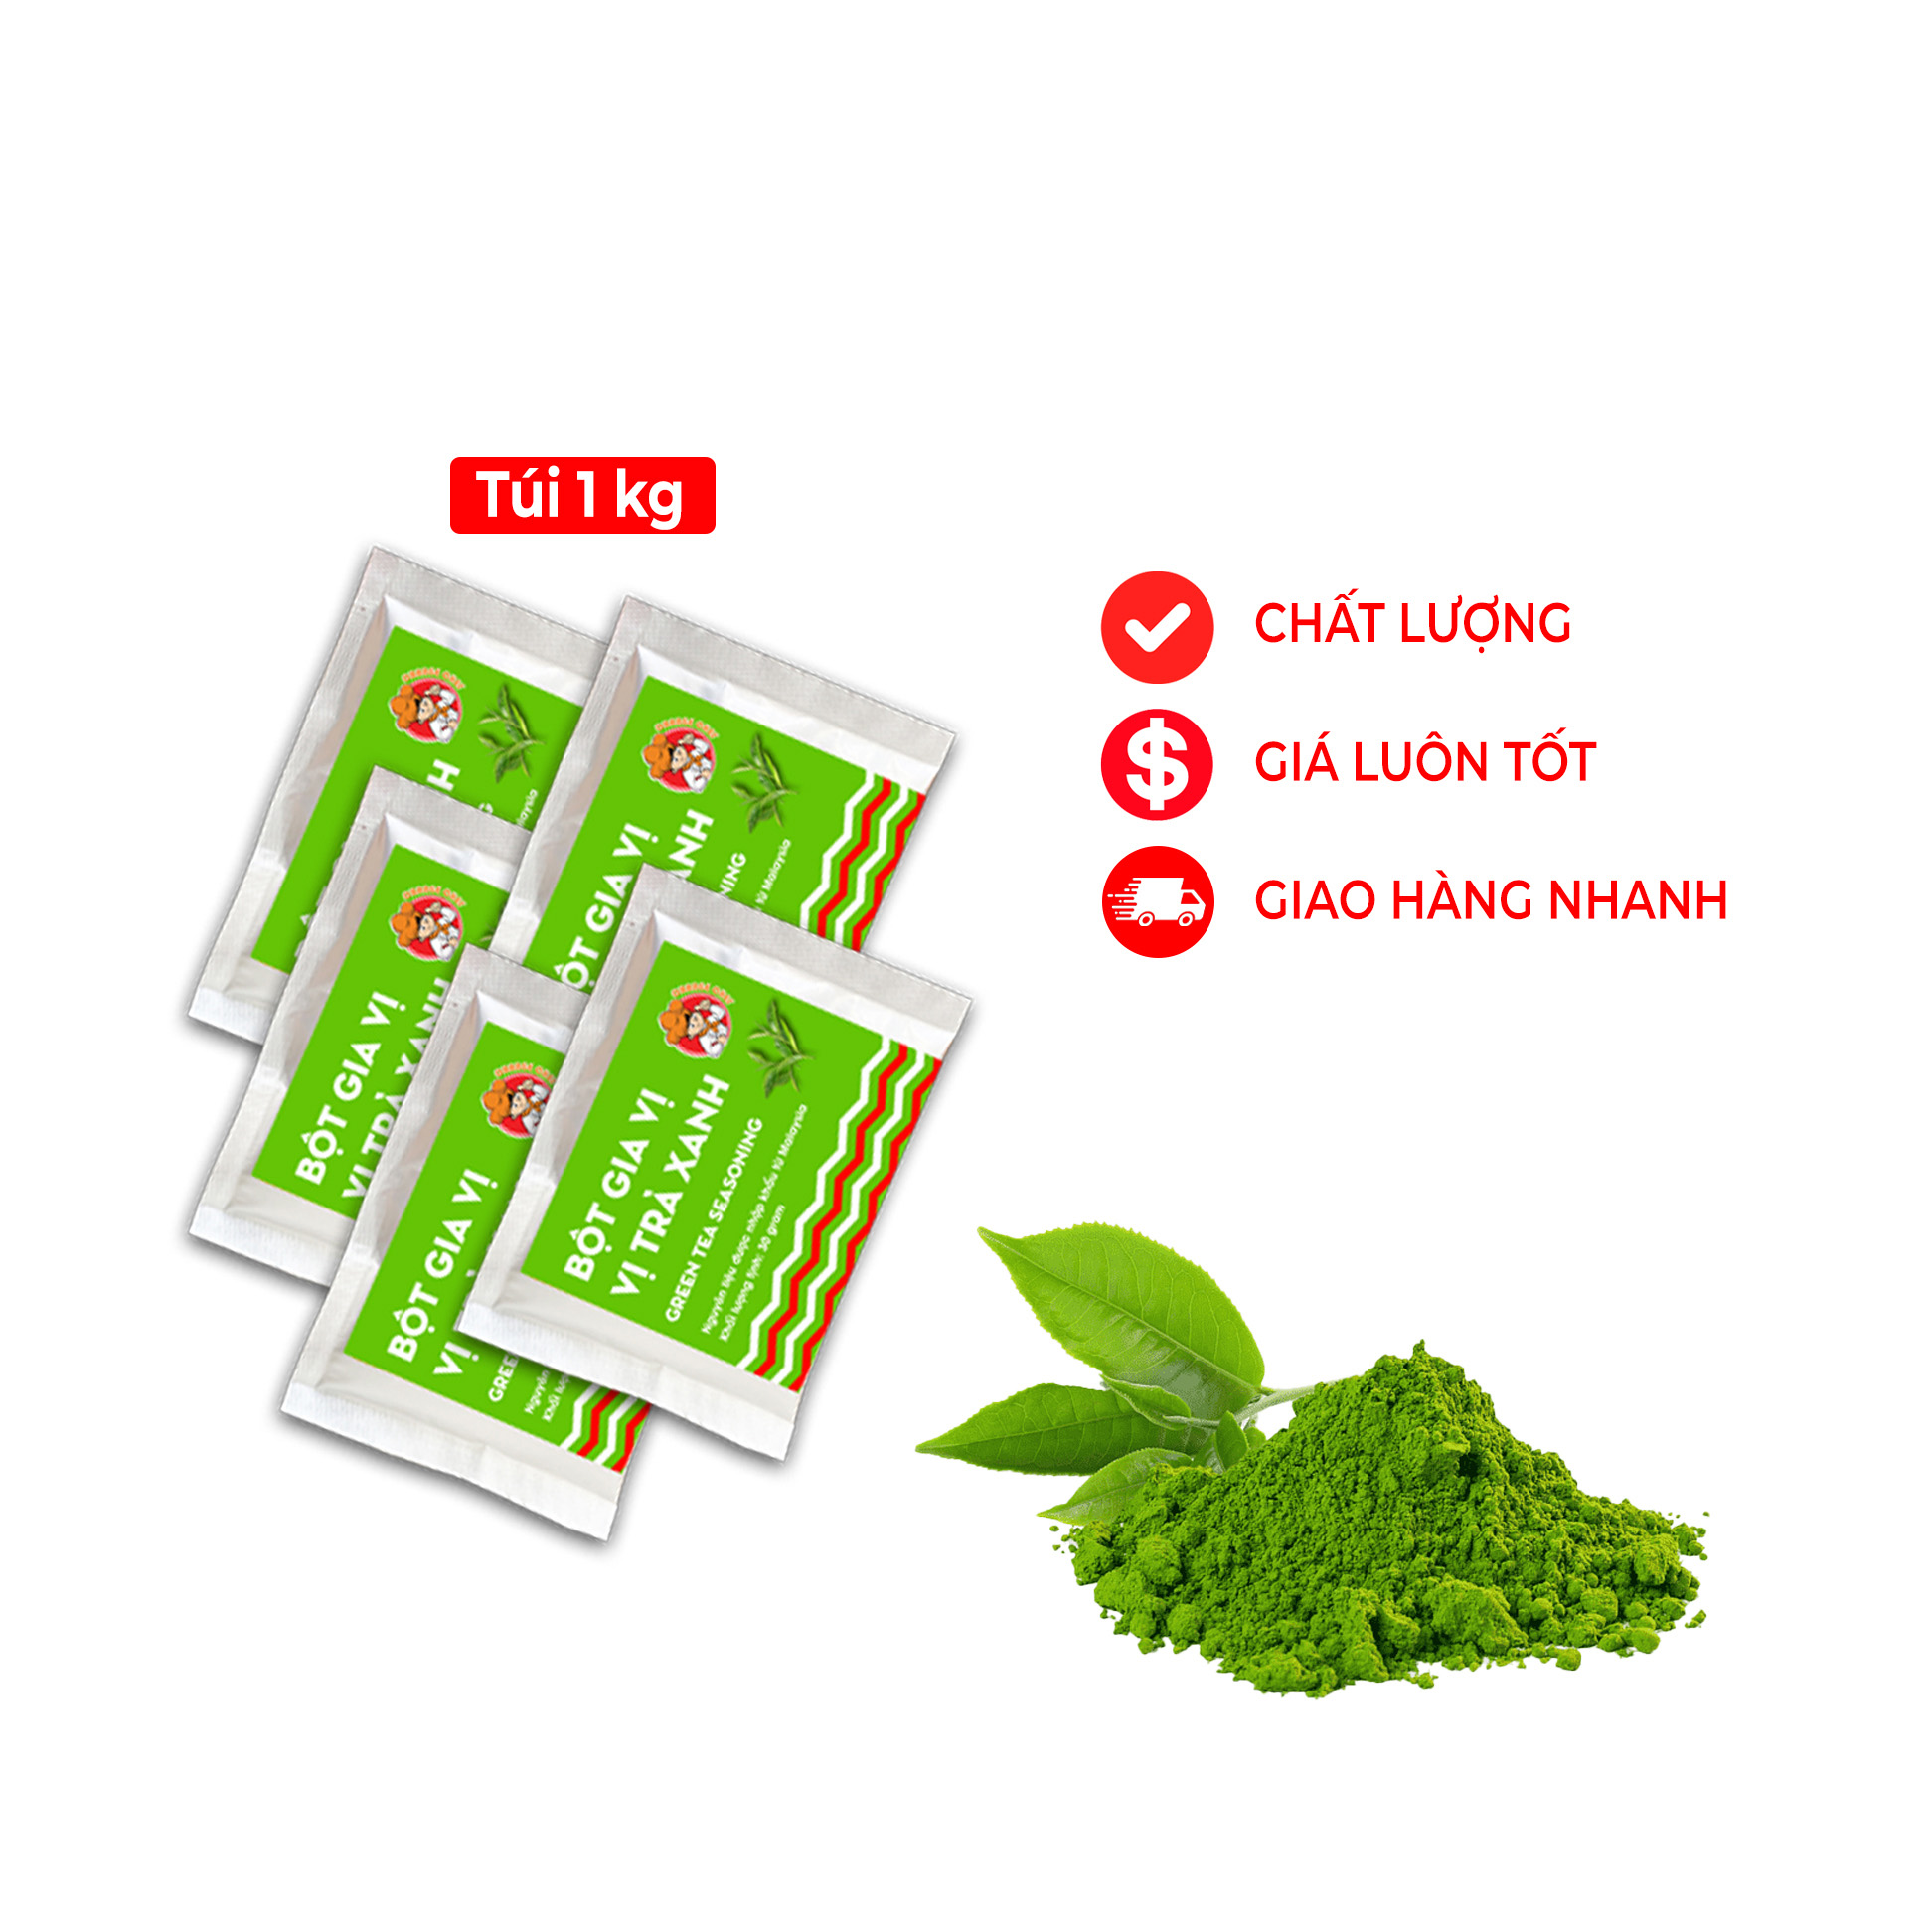 Bột Lắc Vị Trà Xanh Malaysia [Verozyme] - Green Tea Taste Blaster - 30g / túi - Đậm vị thơm lừng trà xanh, hàng chính hãng nhập khẩu thơm ngon